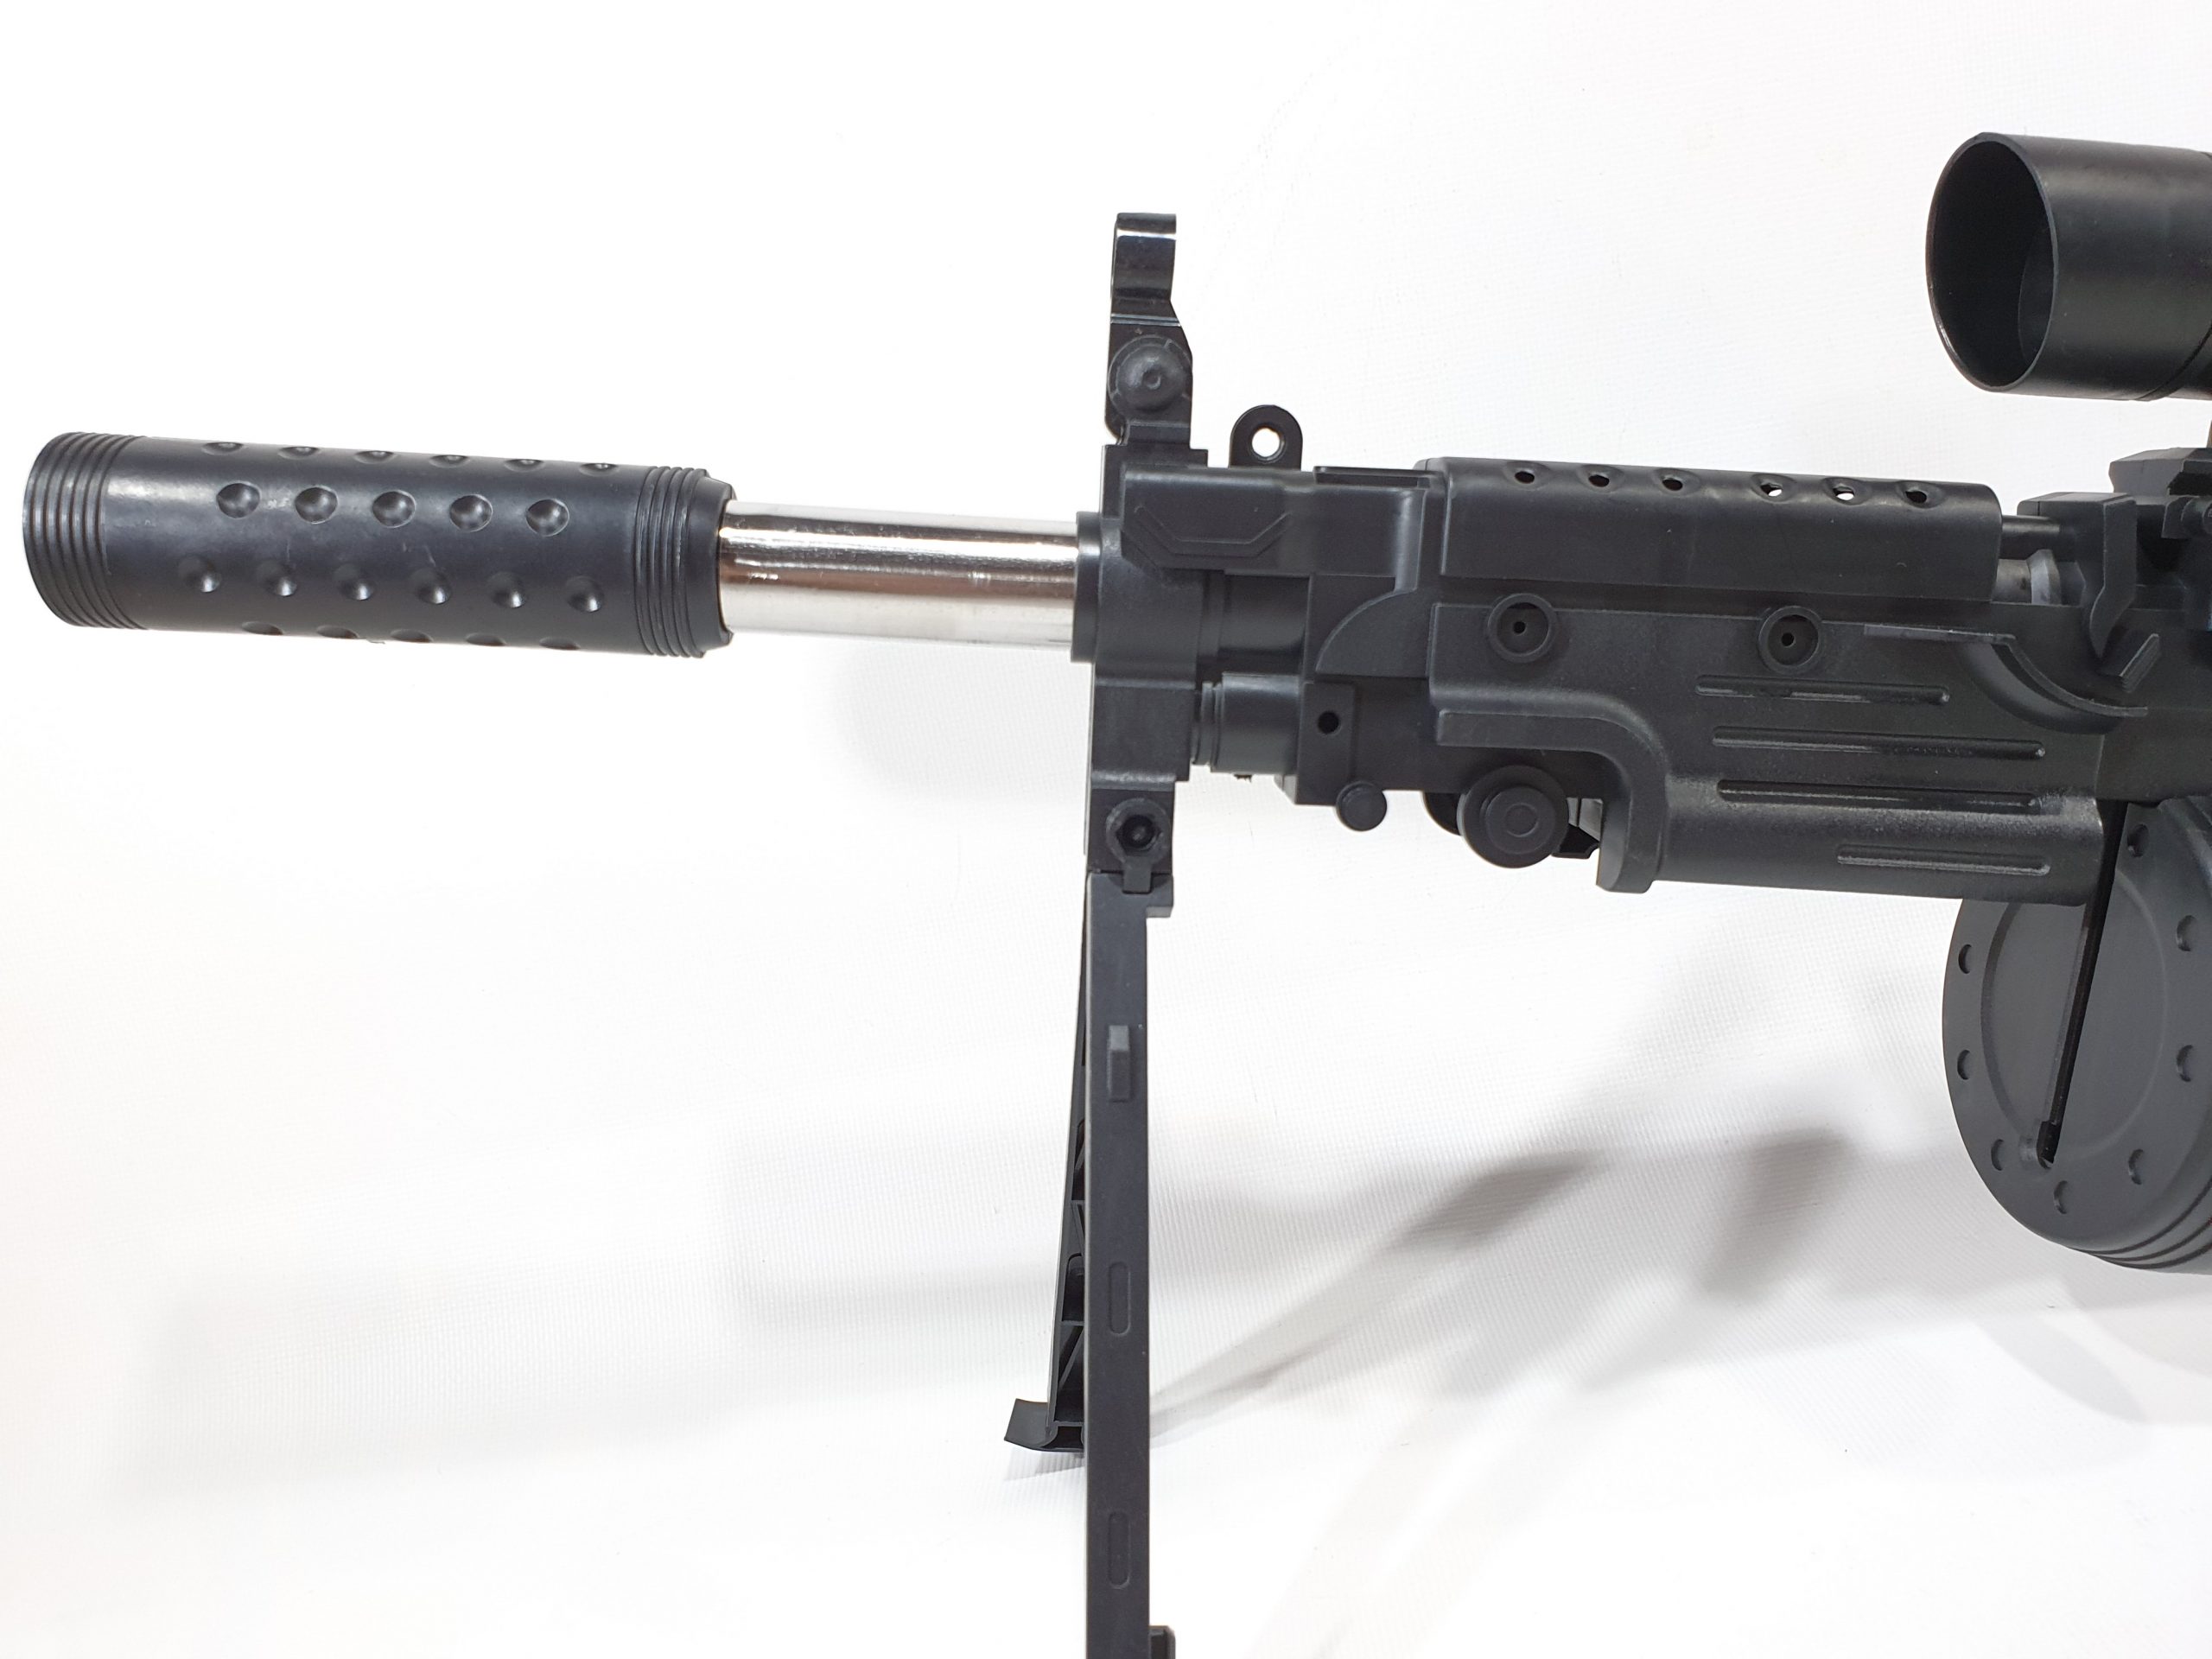 Snajperka Karabin Maszynowy Na Kulki M249 SAW z Laserem TOMDORIX